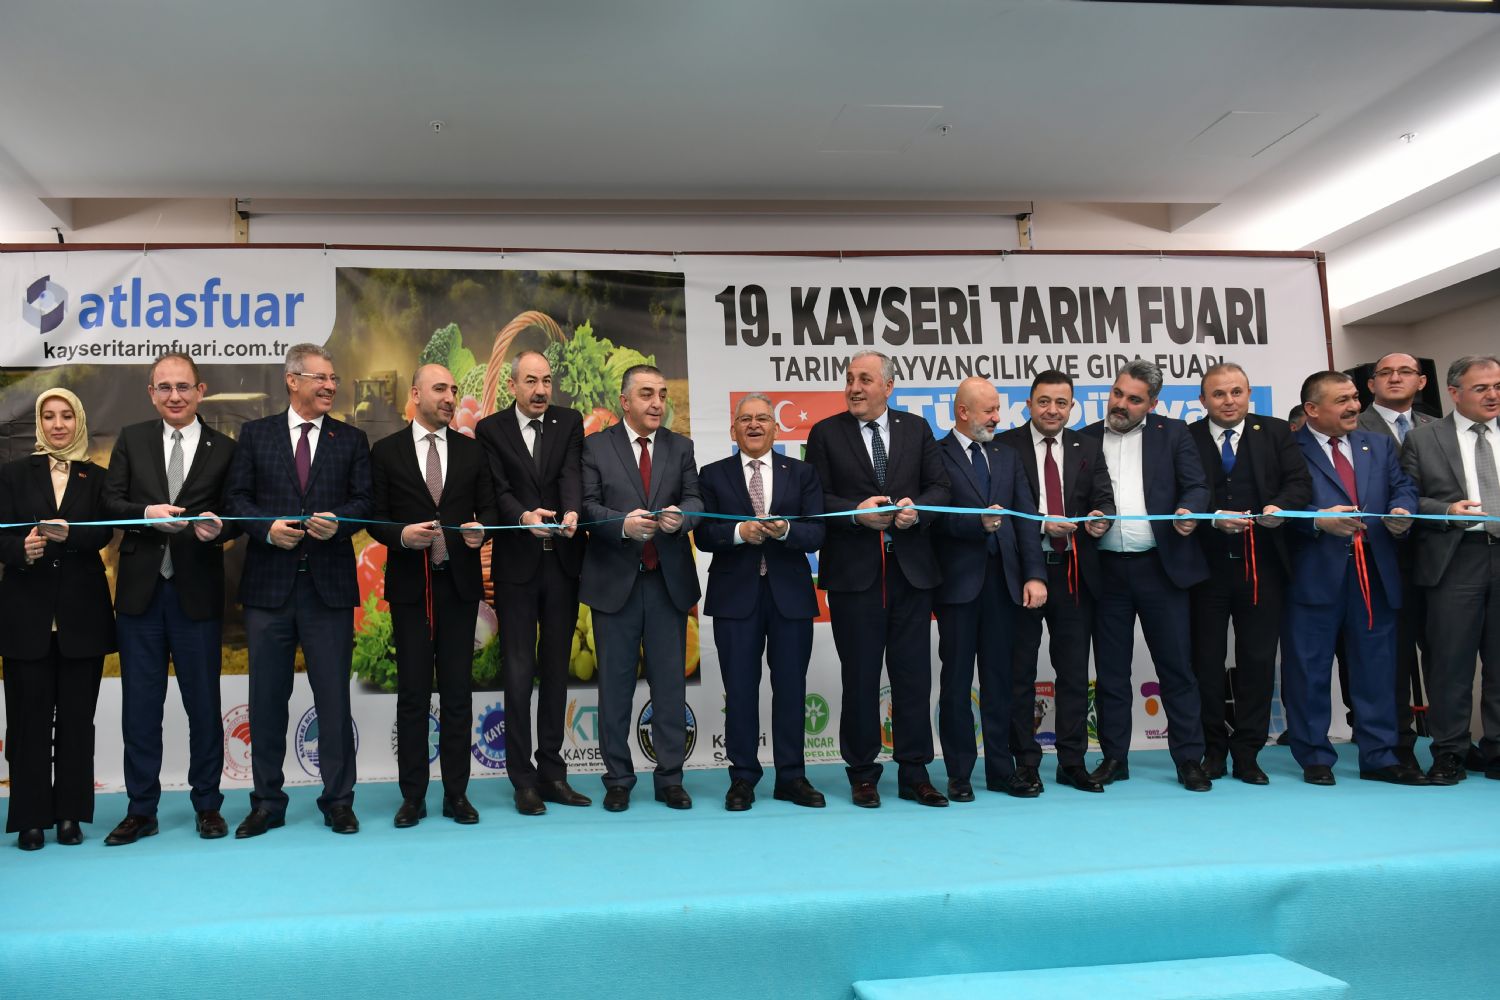 Kayseri OSB Başkanı Yalçın ve Yönetimi 19. Kayseri Tarım Fuarı Açılışına Katıldı